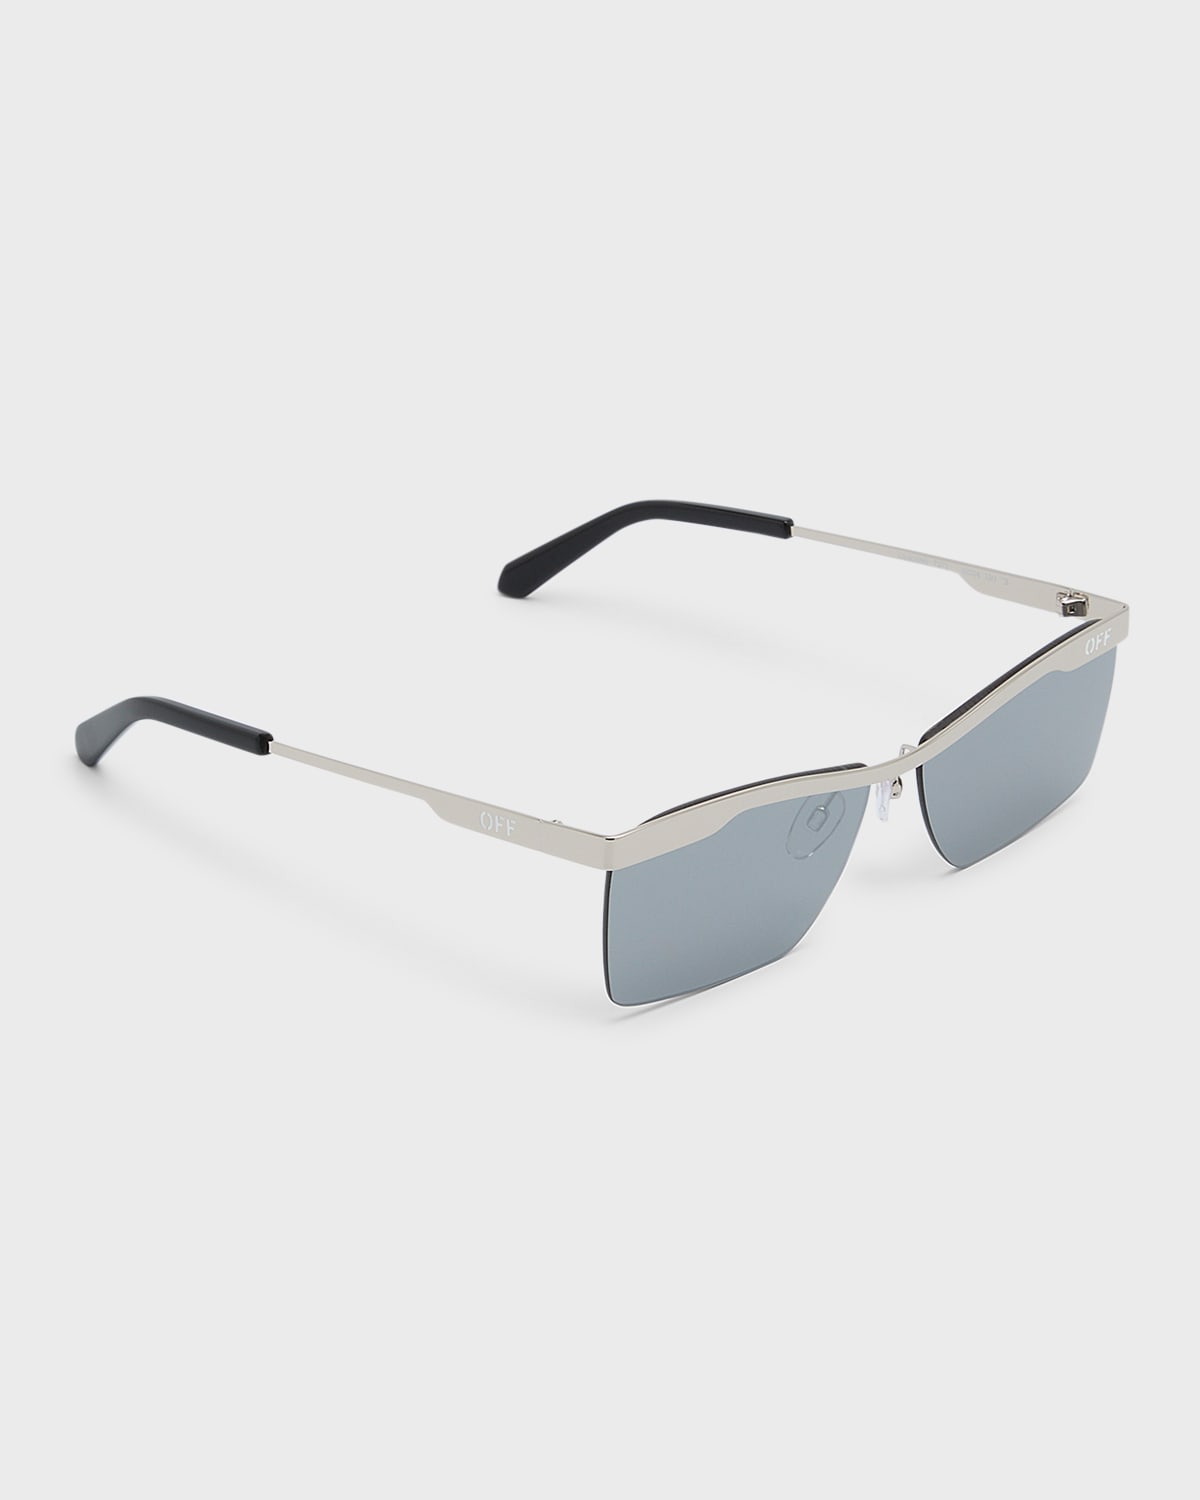 Off-white Rimini Metal Alloy & Plastic Aviator Sunglasses In Silver Mirror Sil